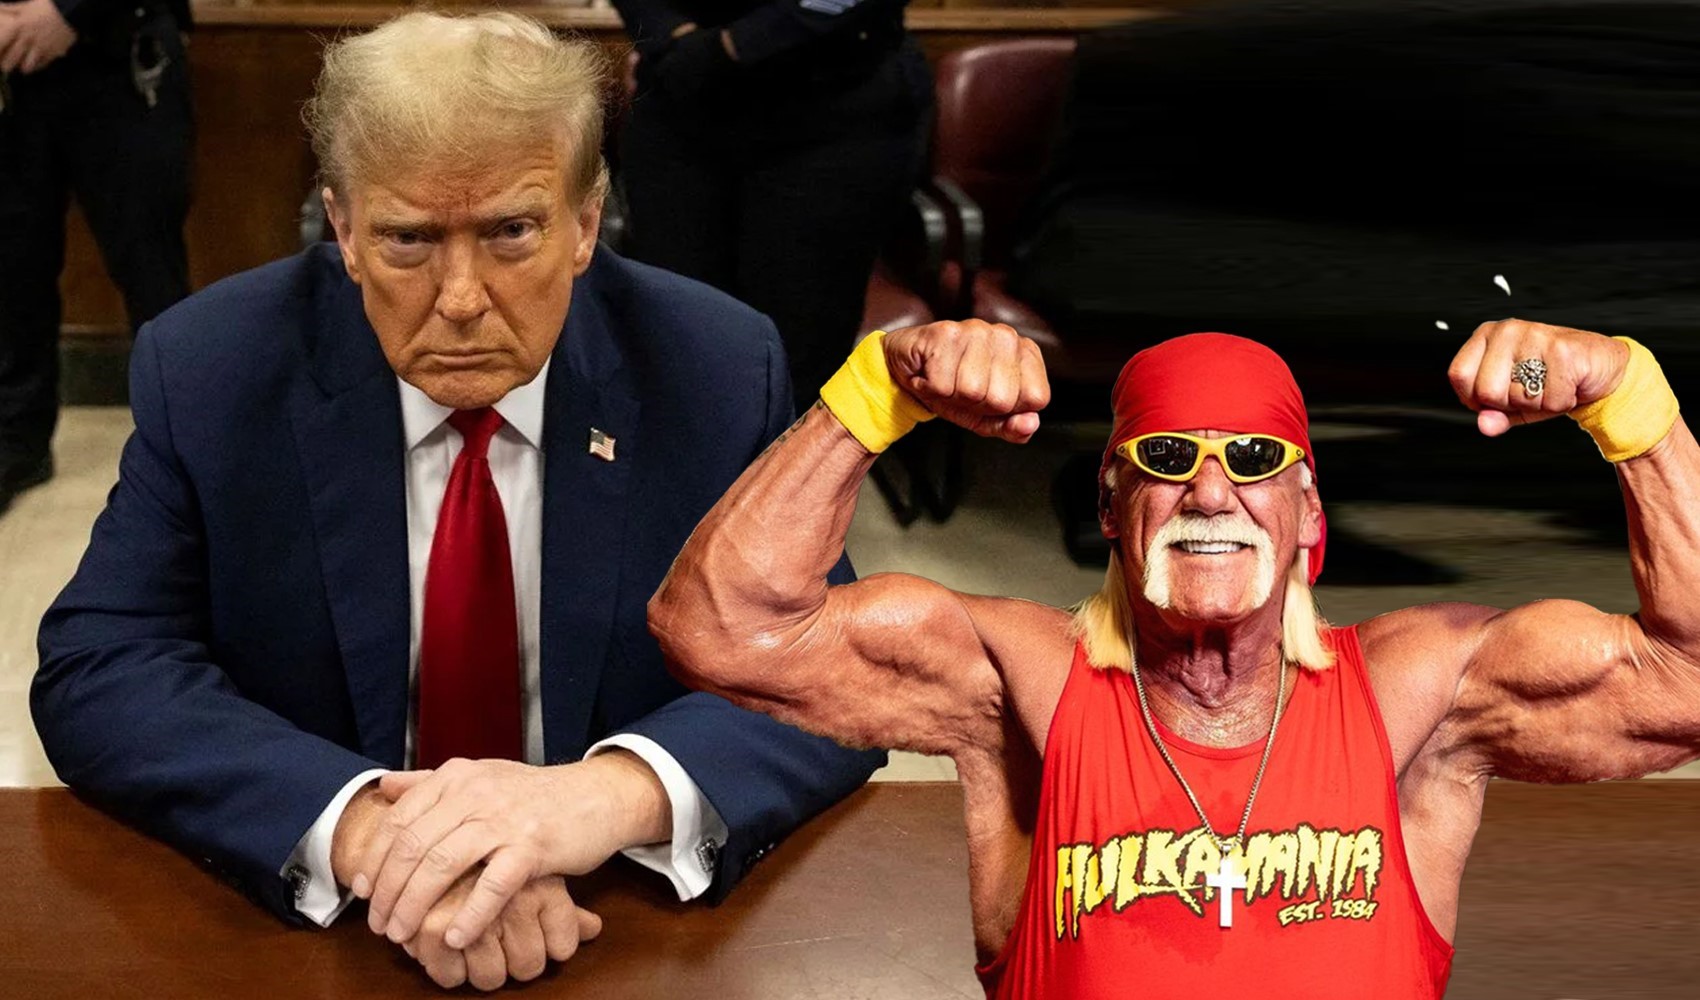 Trump'ın 'sus payı' davasında yeni gelişme! Hulk Hogan'ın da adı geçiyor...